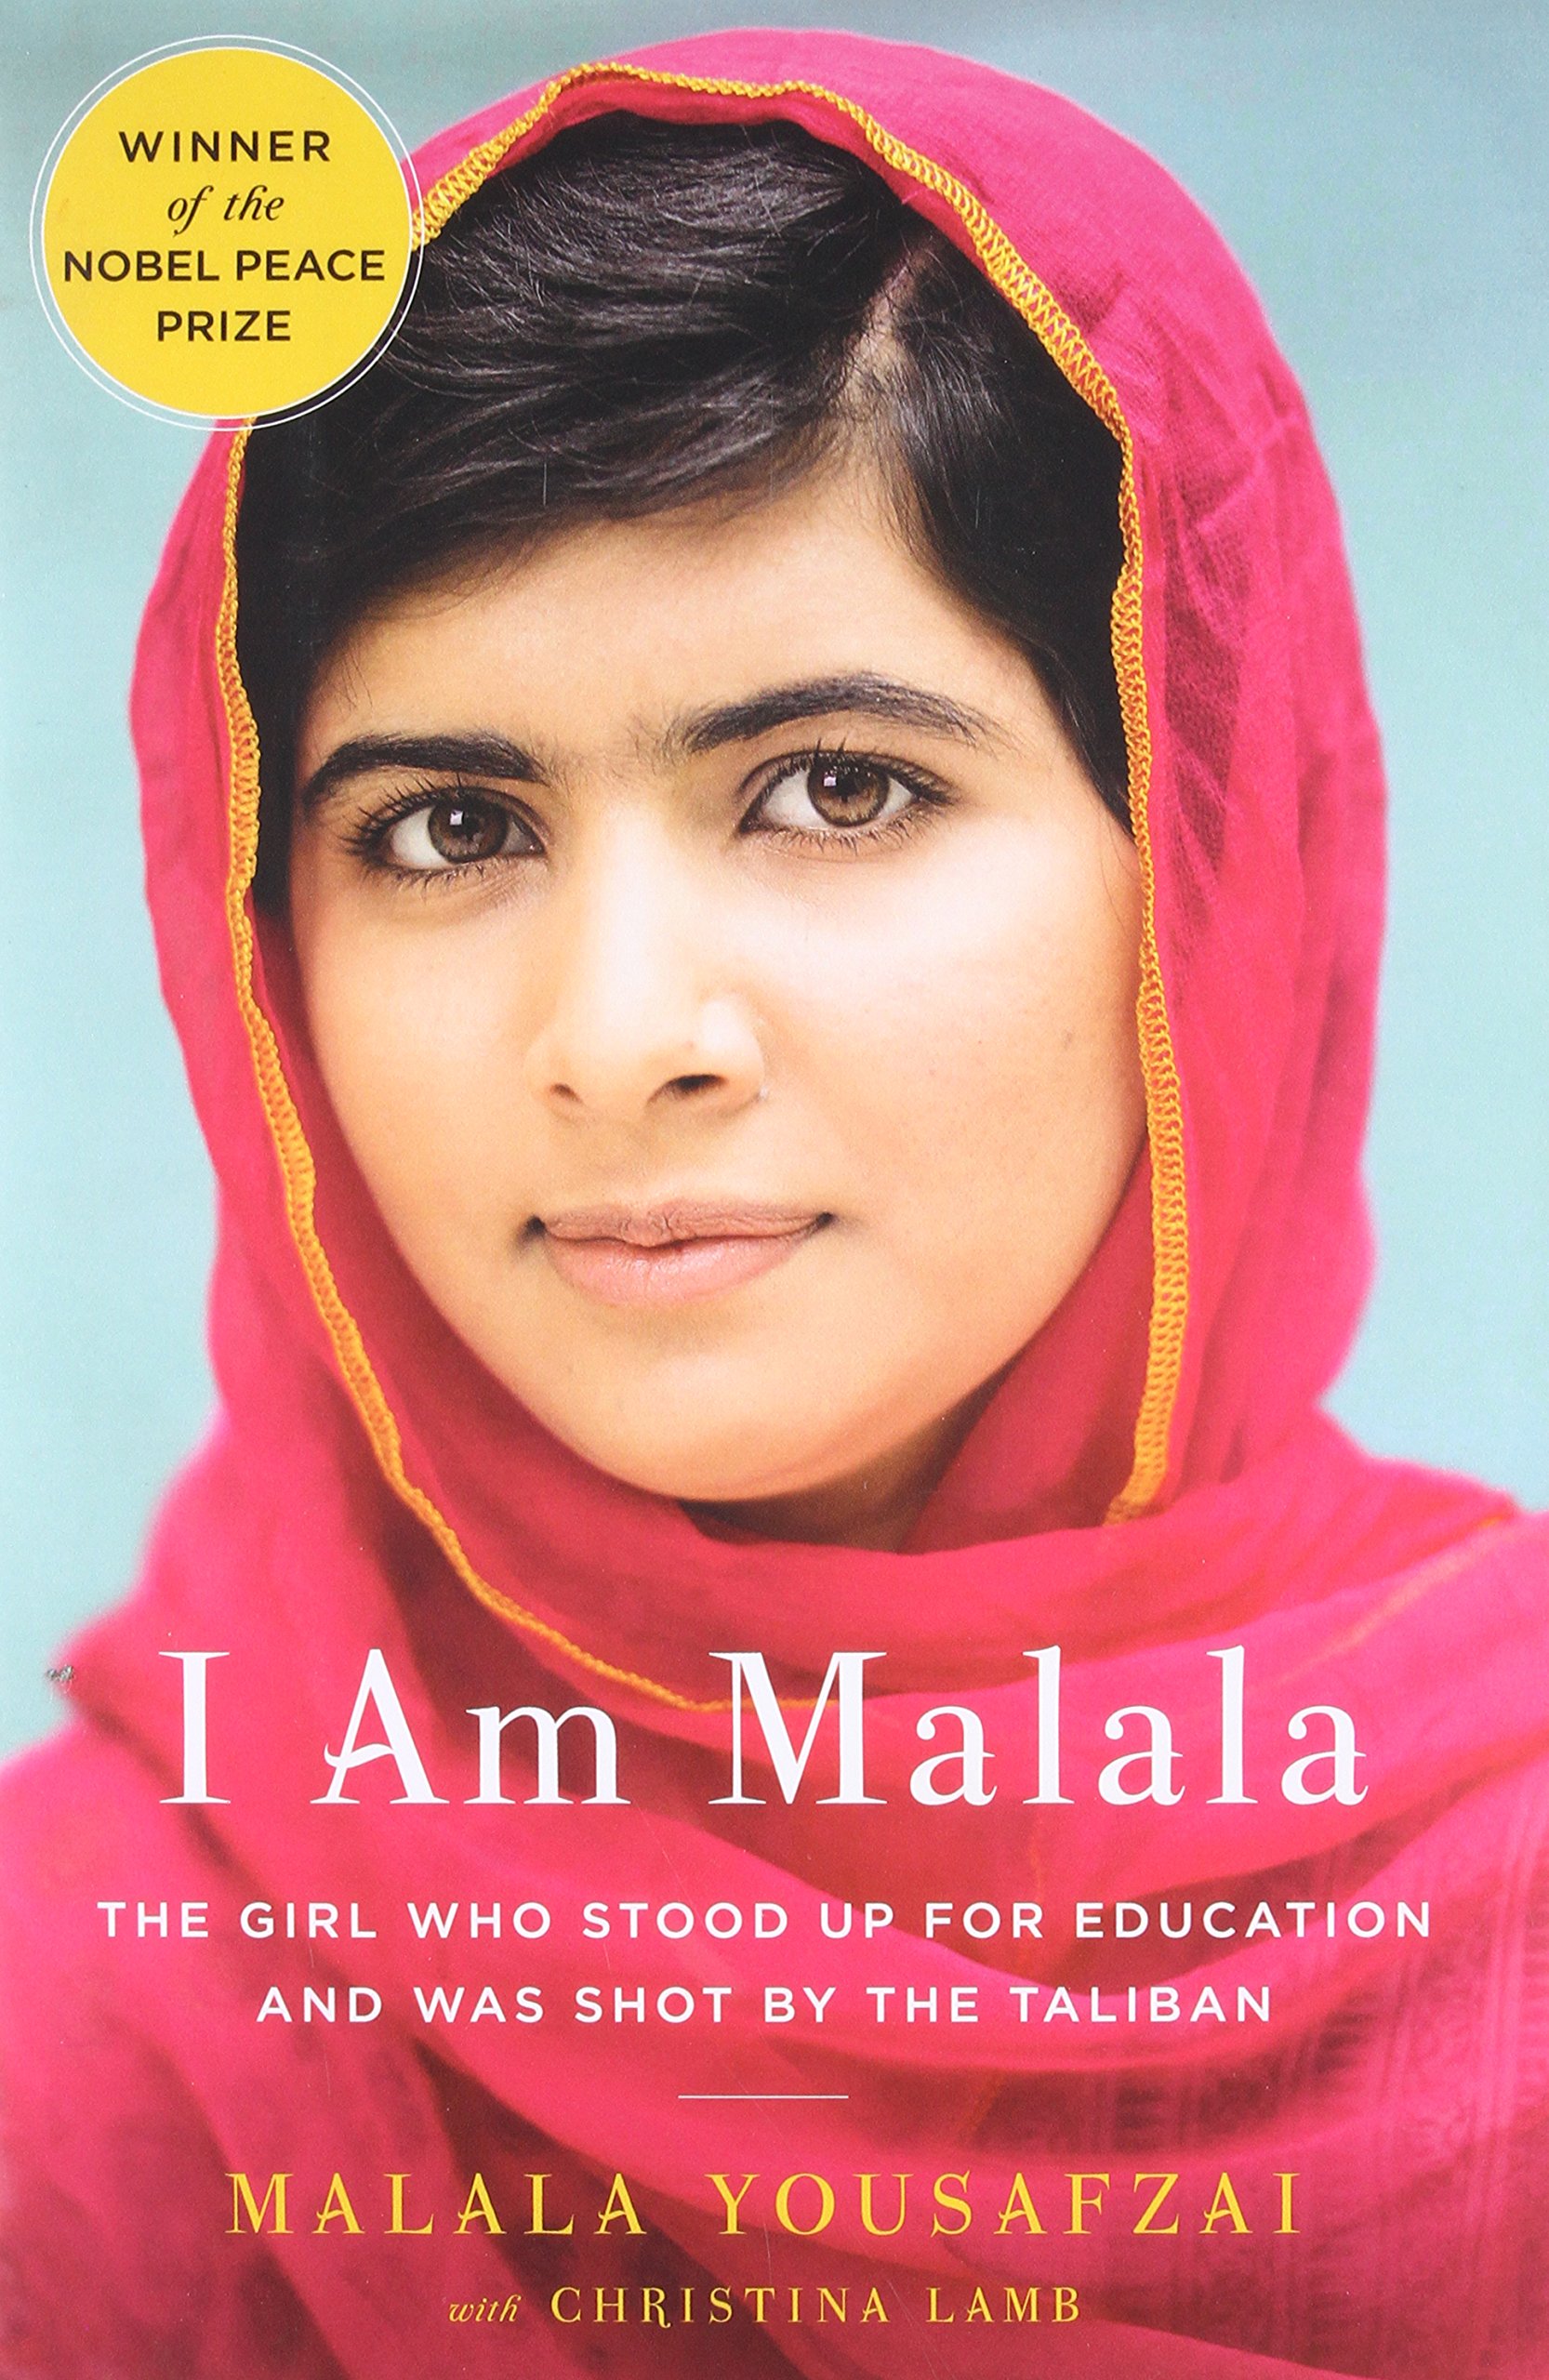 Image for "I am Malala"